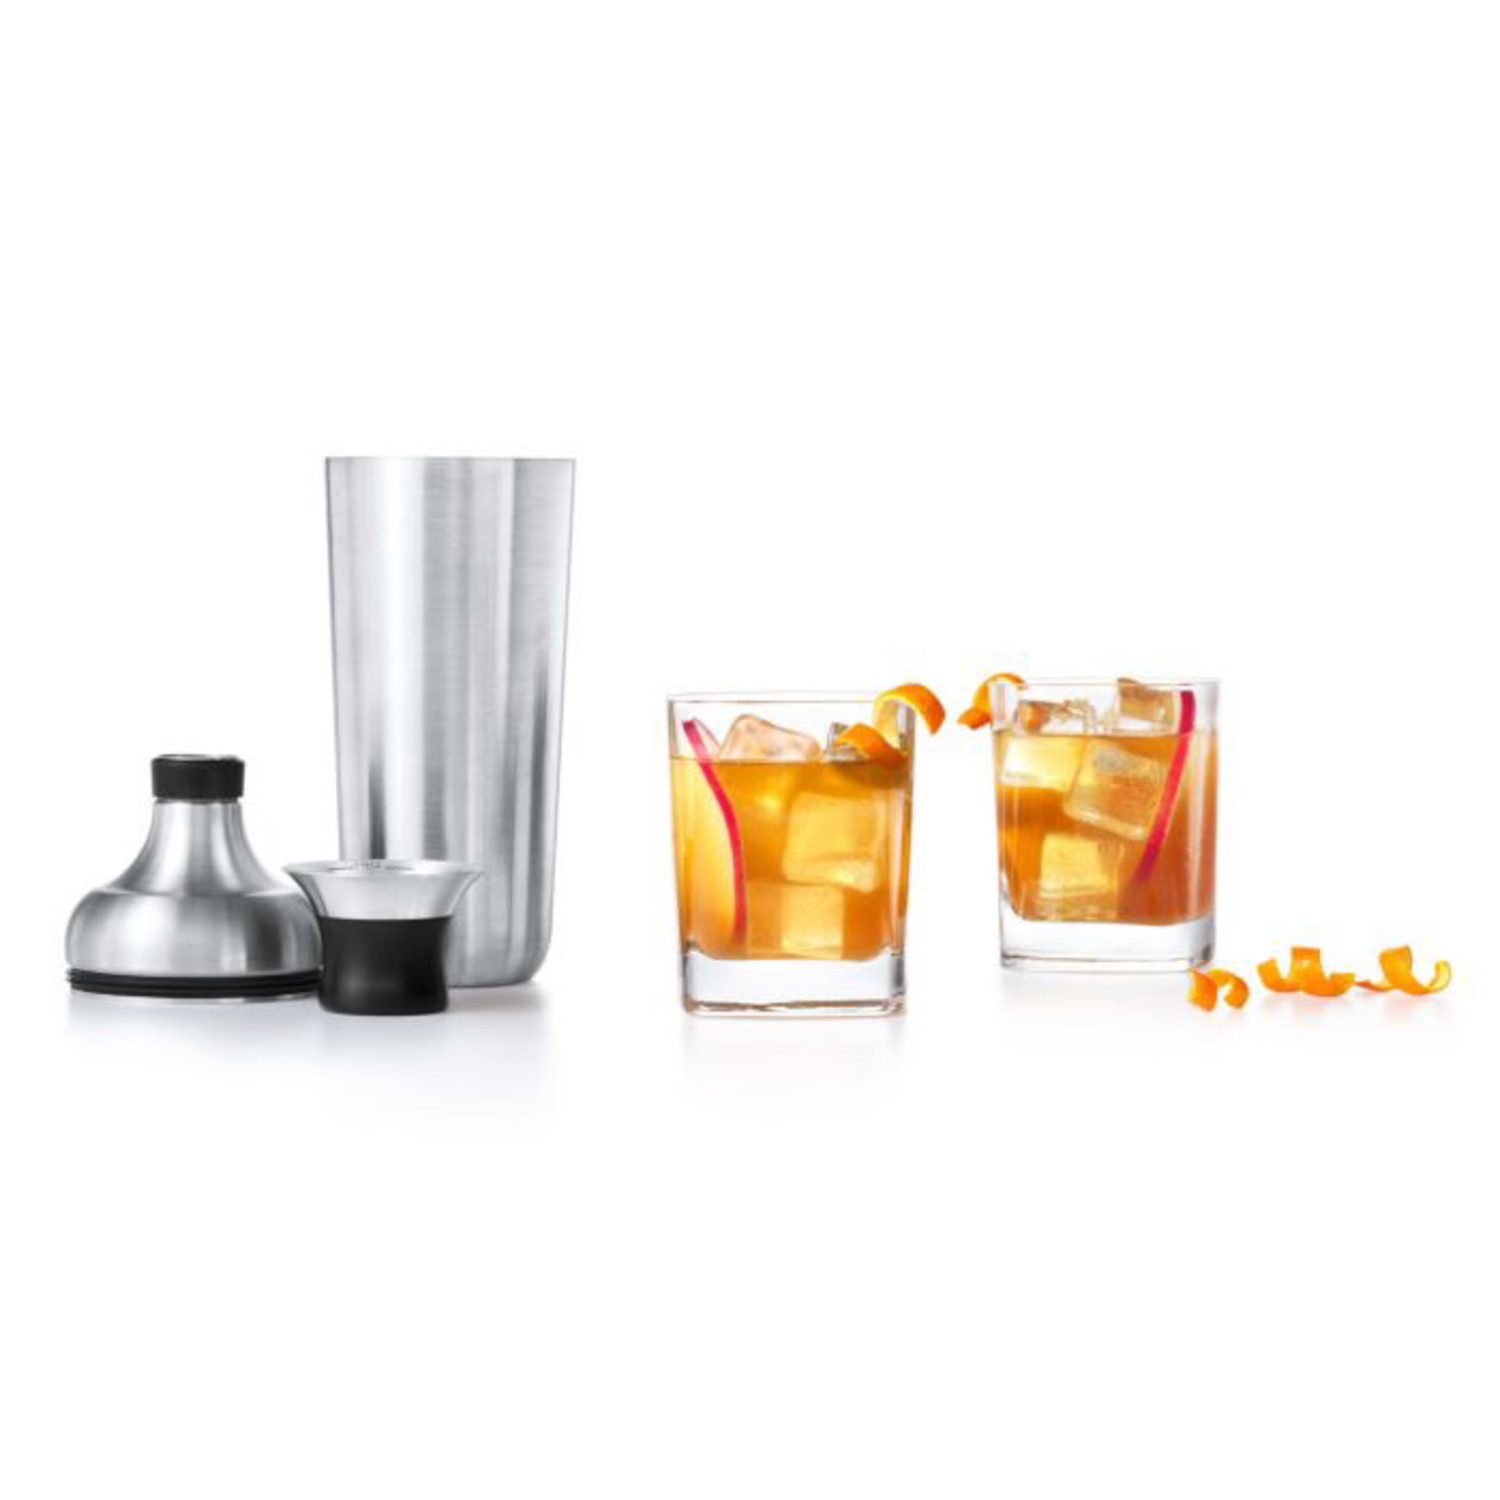 https://cdn.shoplightspeed.com/shops/633447/files/48123634/1500x4000x3/oxo-stainless-steel-cocktail-shaker-strainer.jpg